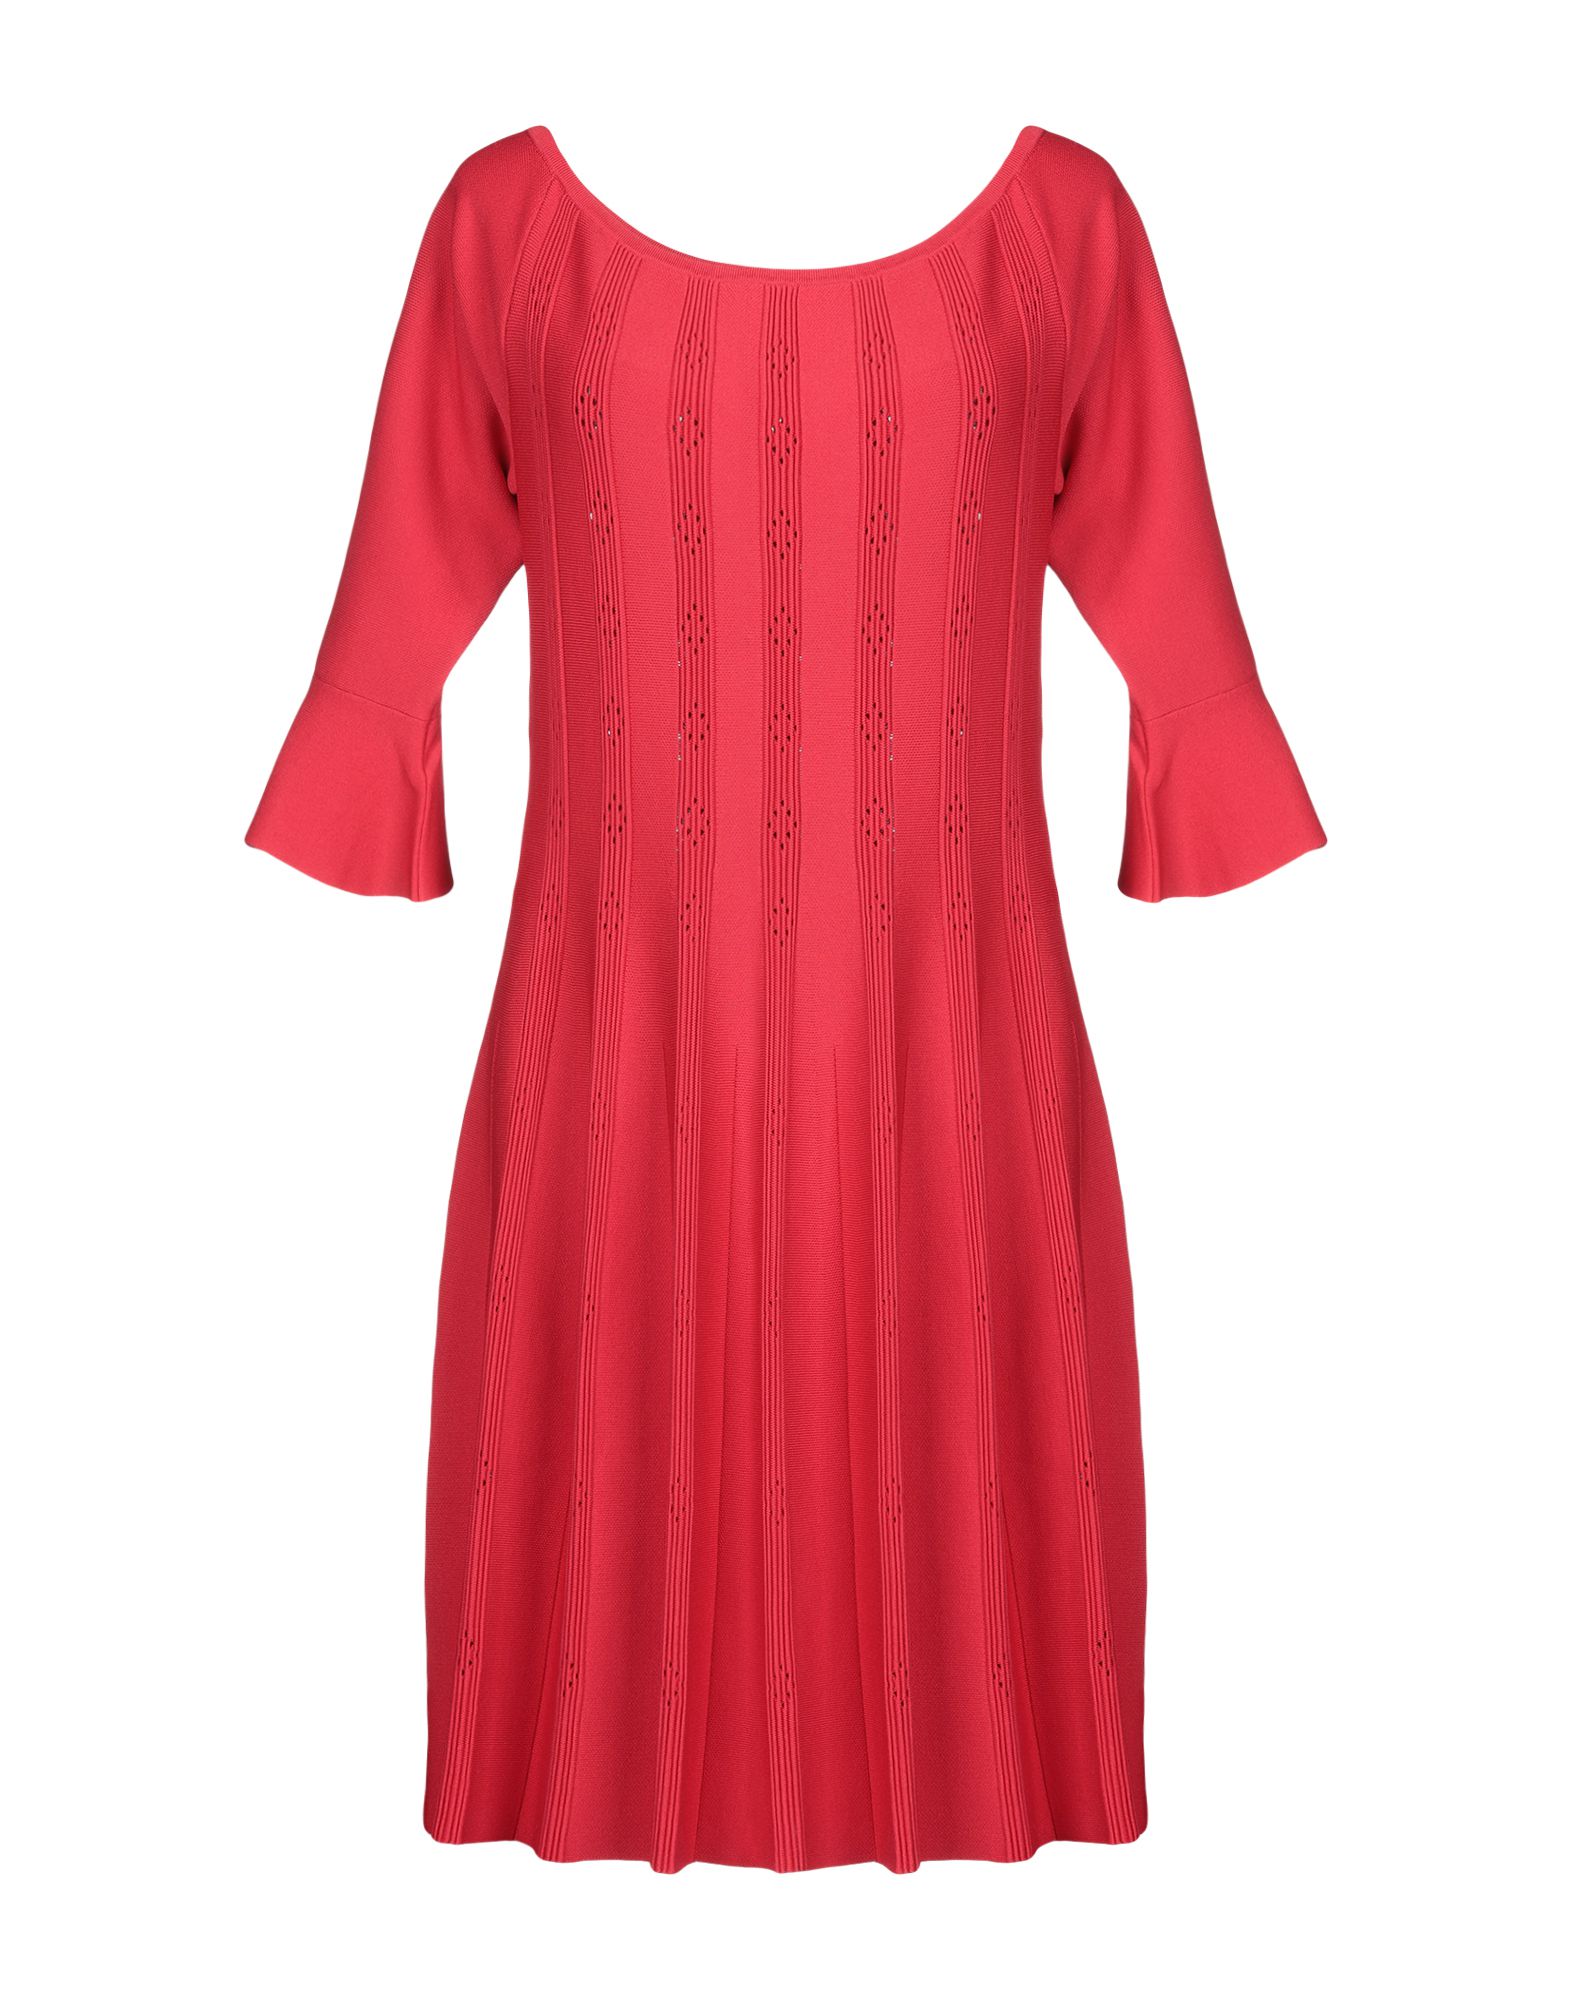 Платье марелла. Marella платье 2019. Marella платье красное. Marella платье. Марелла платье с блестками.